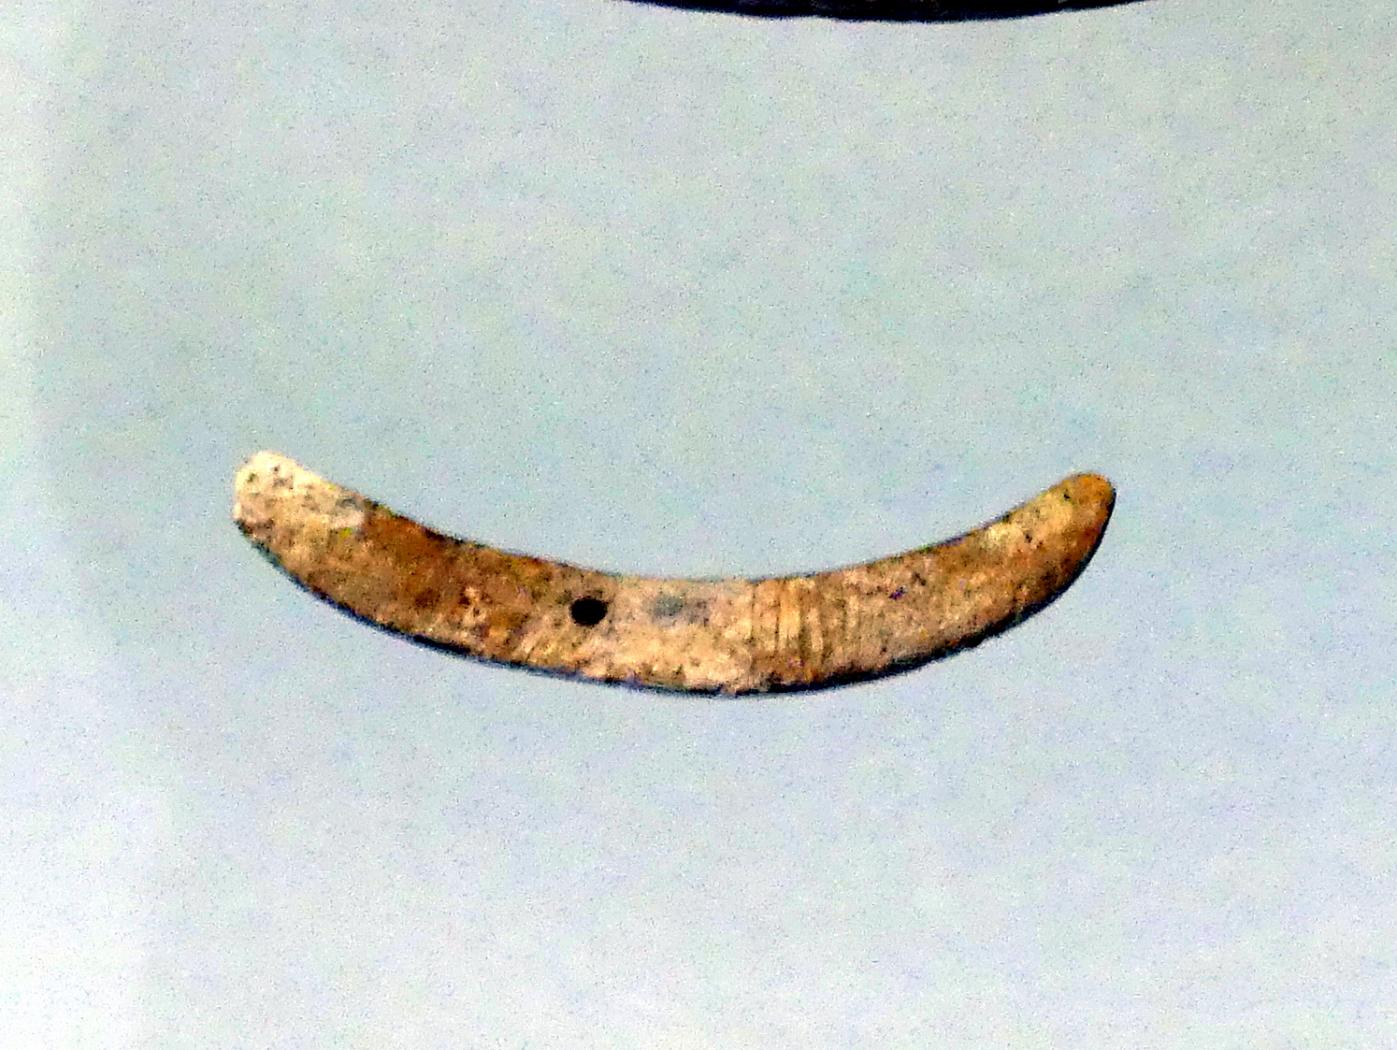 Knochenanhänger, Endneolithikum, 2800 - 1700 v. Chr.